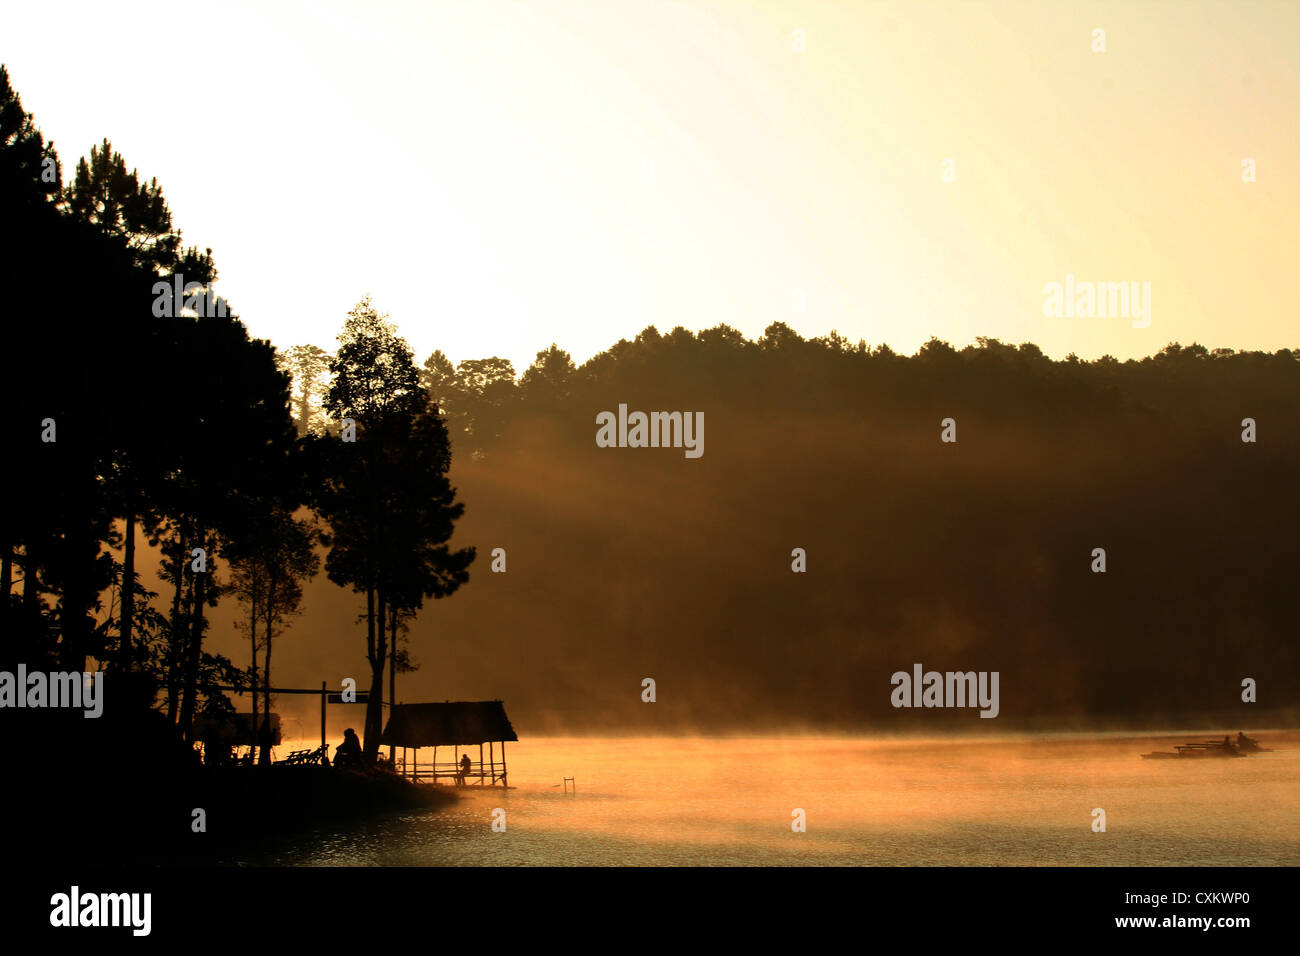 landscape beautiful sun light on lake and boat Stock Photo